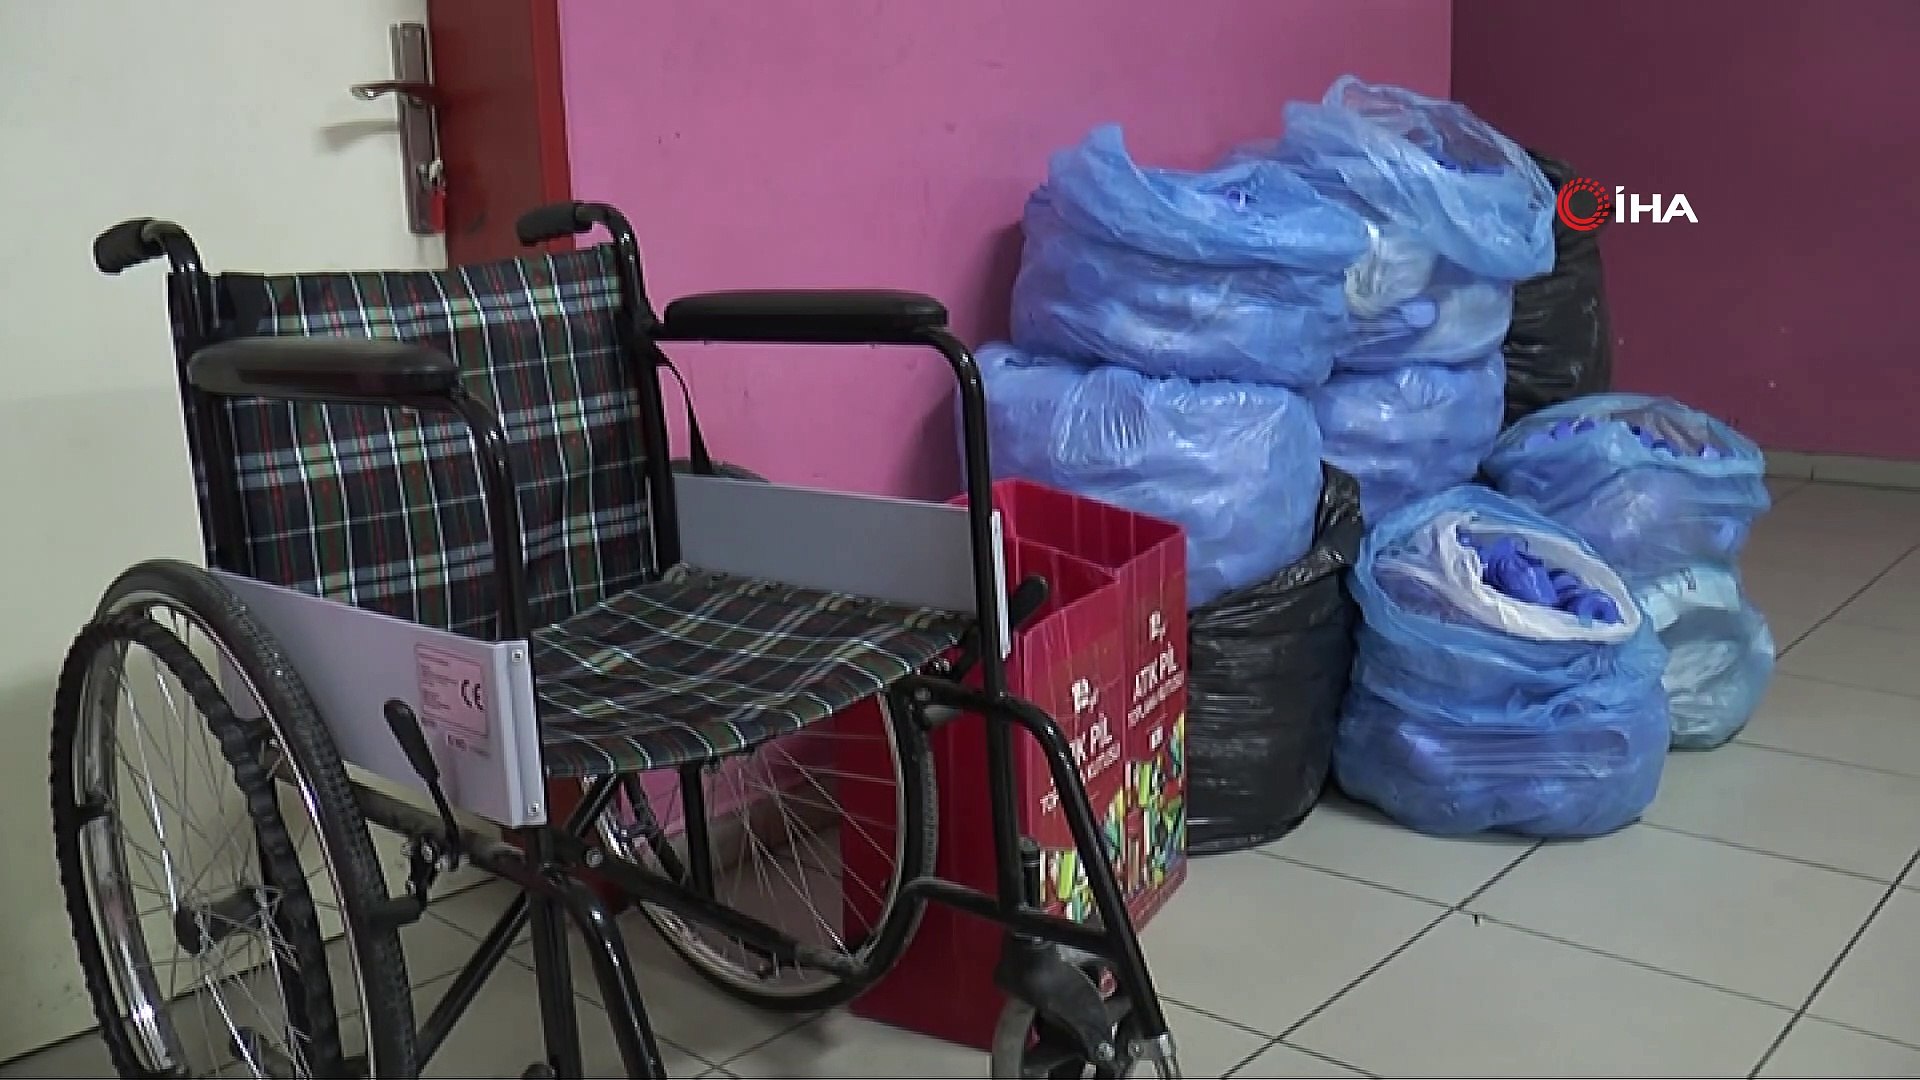 30 bin kapakla 3 tekerlekli sandalye almışlardı...Şimdiki hedefleri 100 bin  kapak toplamak - Dailymotion Video